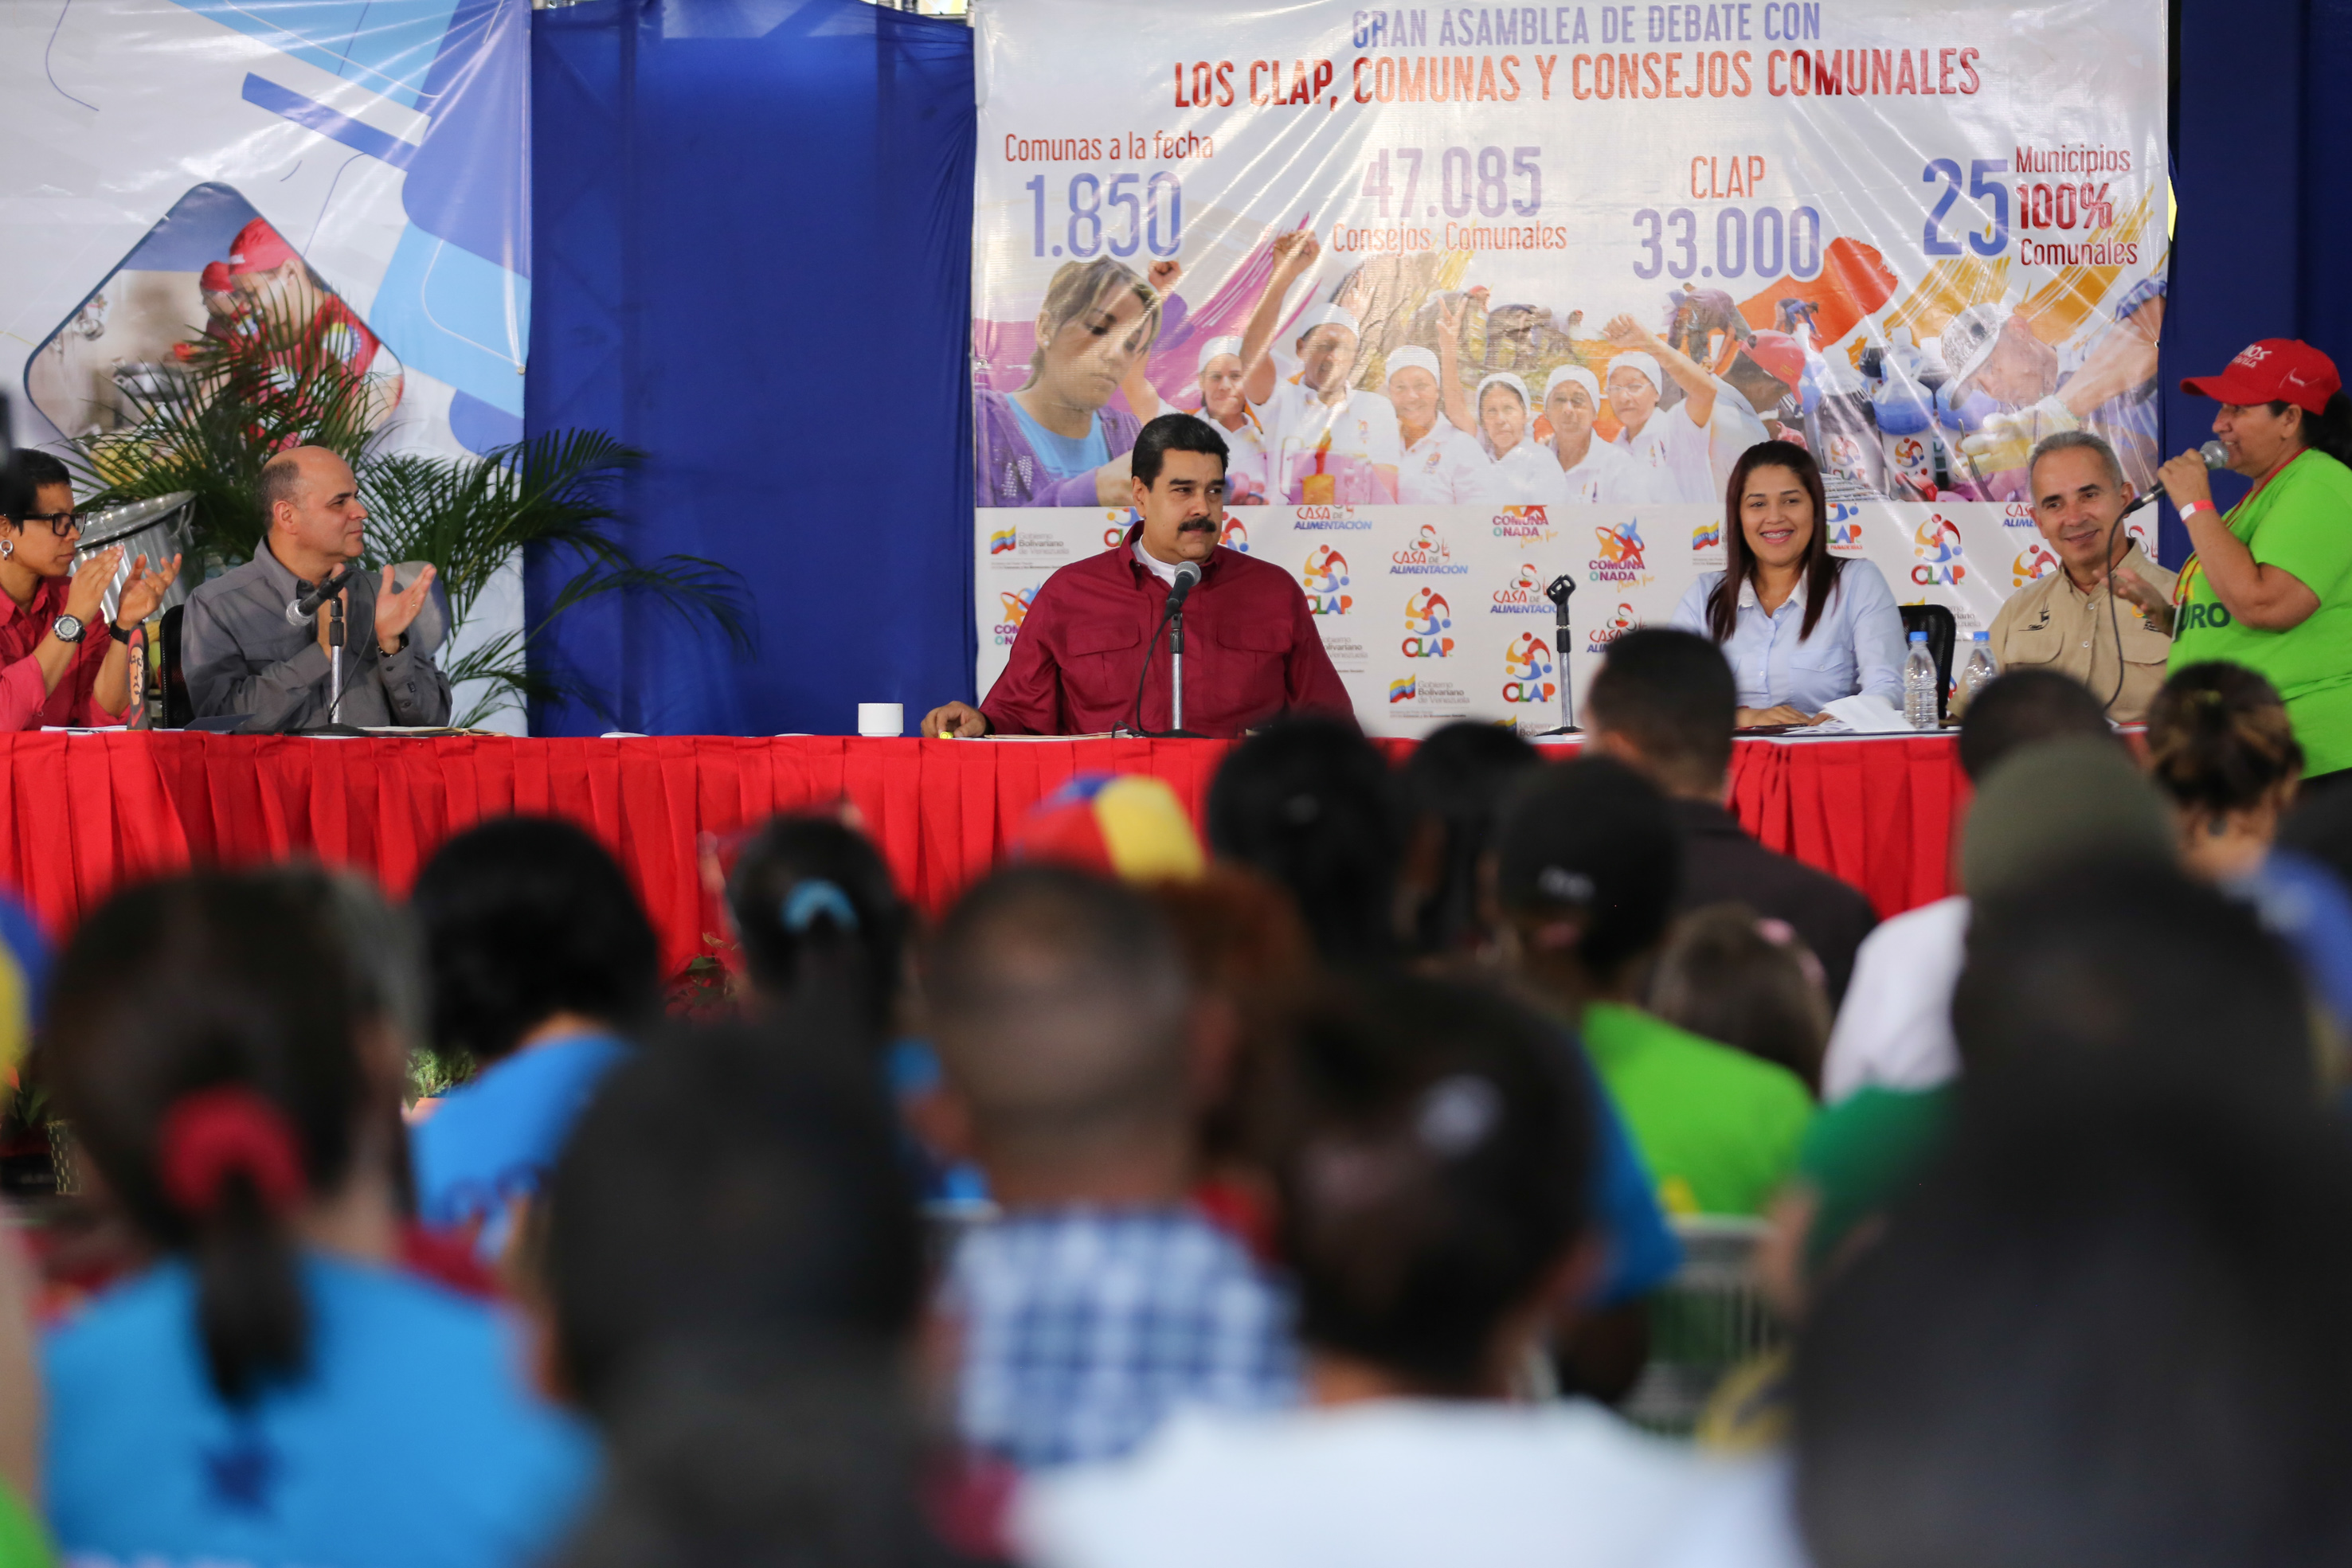 La Ley Orgánica de los Consejos Comunales tiene como objetivo fomentar la participación democrática y participativa en Venezuela.